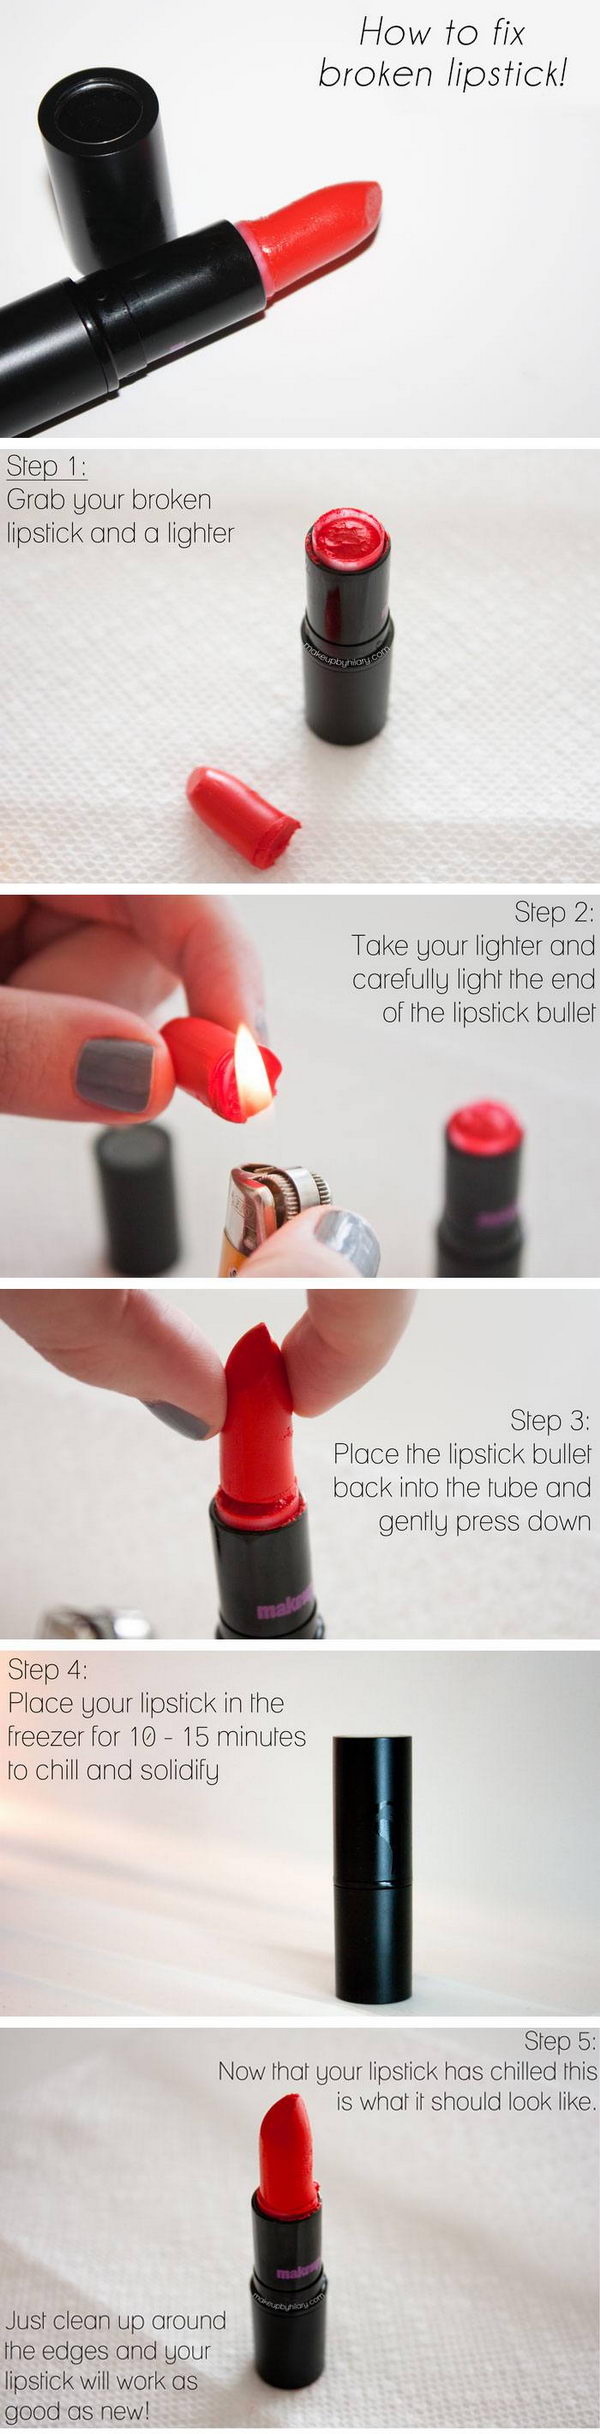 Fix a Broken Lipstick in an Easy Way. 